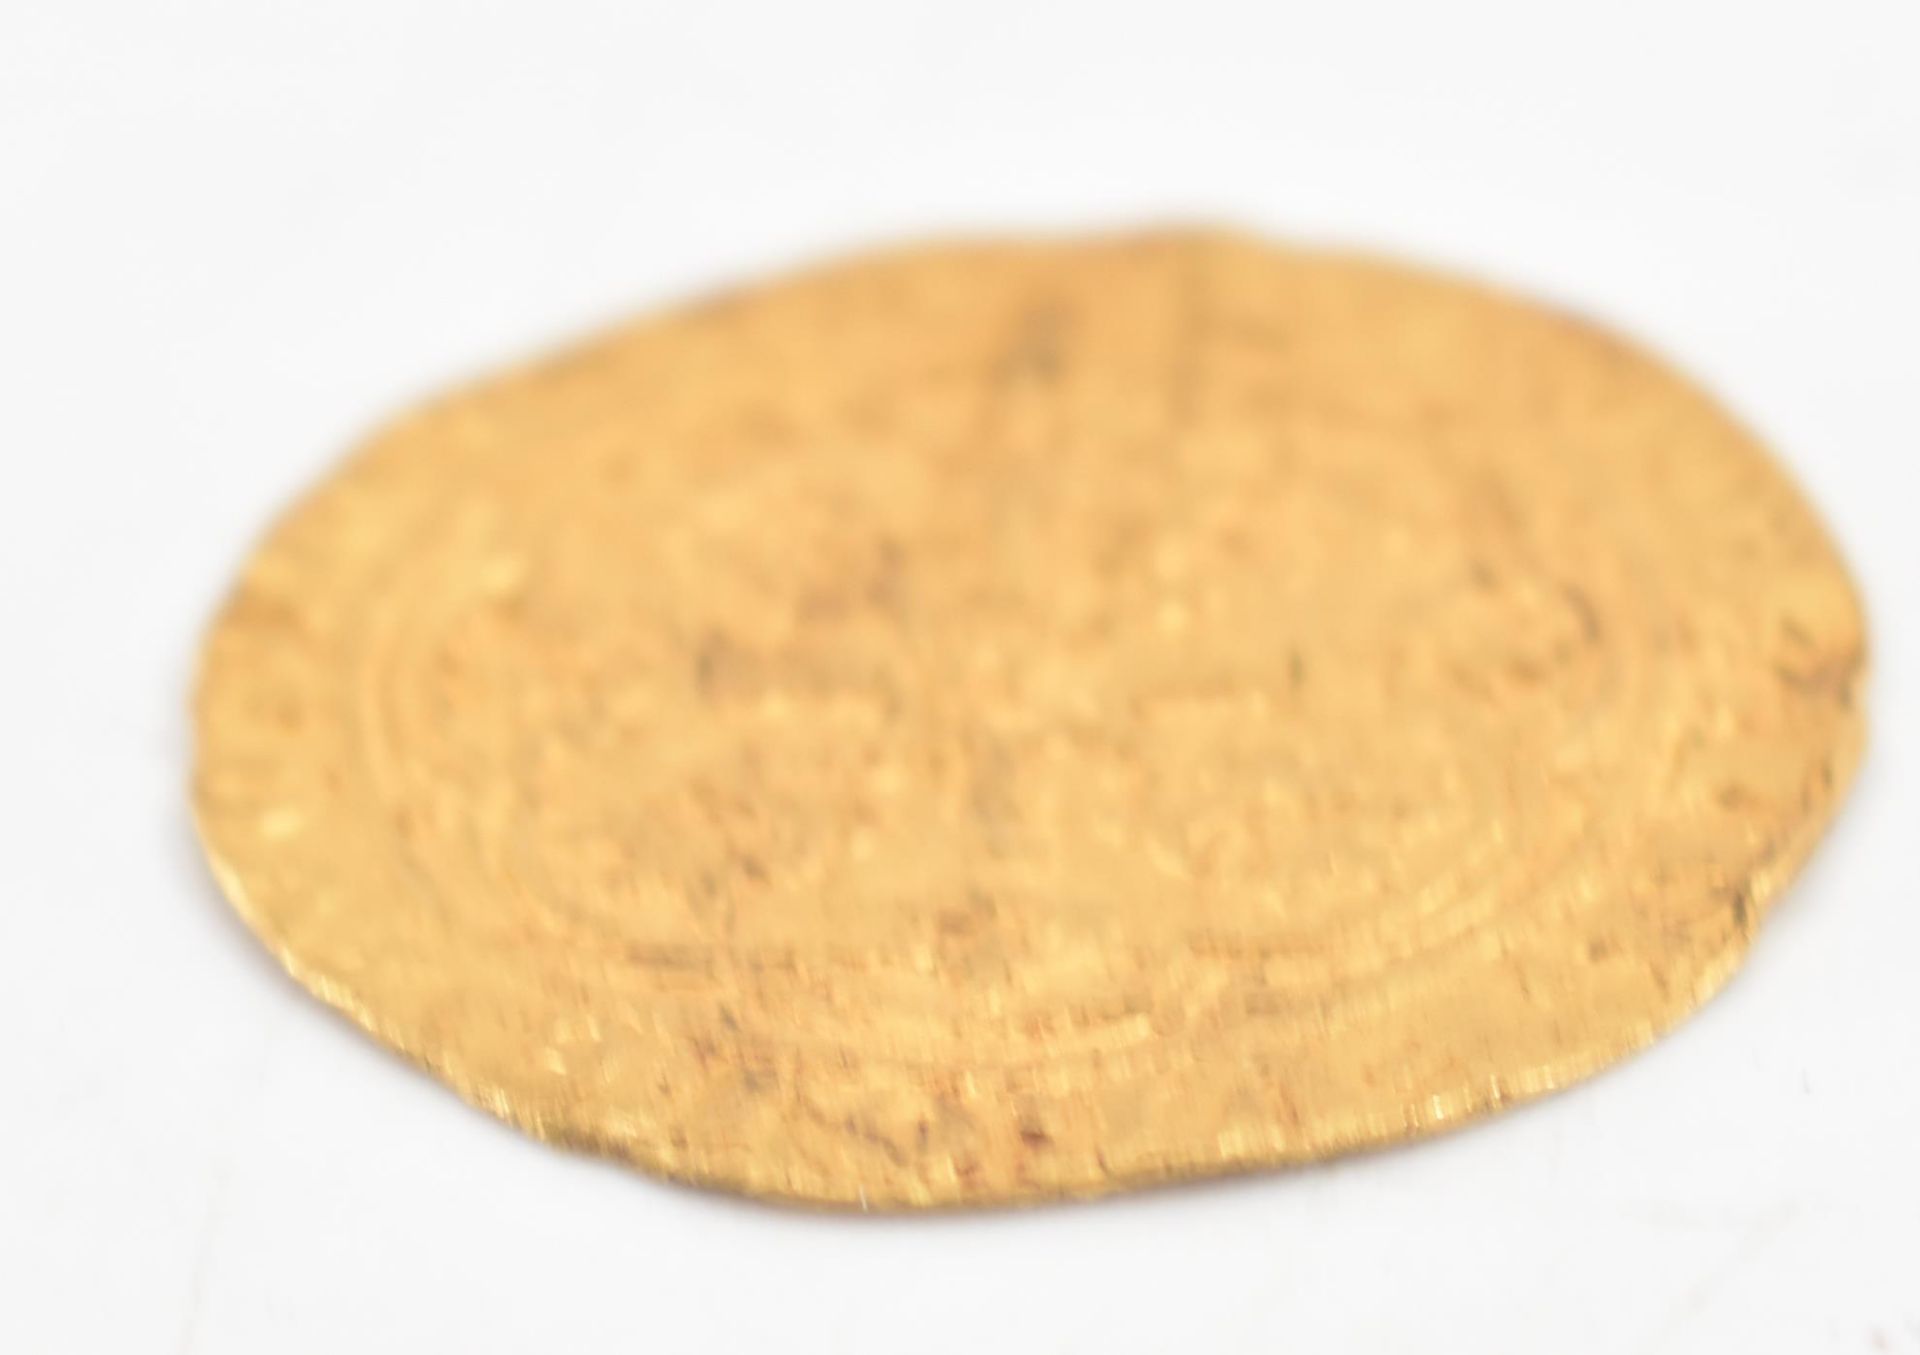 EDWARD III 14TH CENTURY GOLD HALF NOBLE BULLION COIN - Bild 3 aus 3